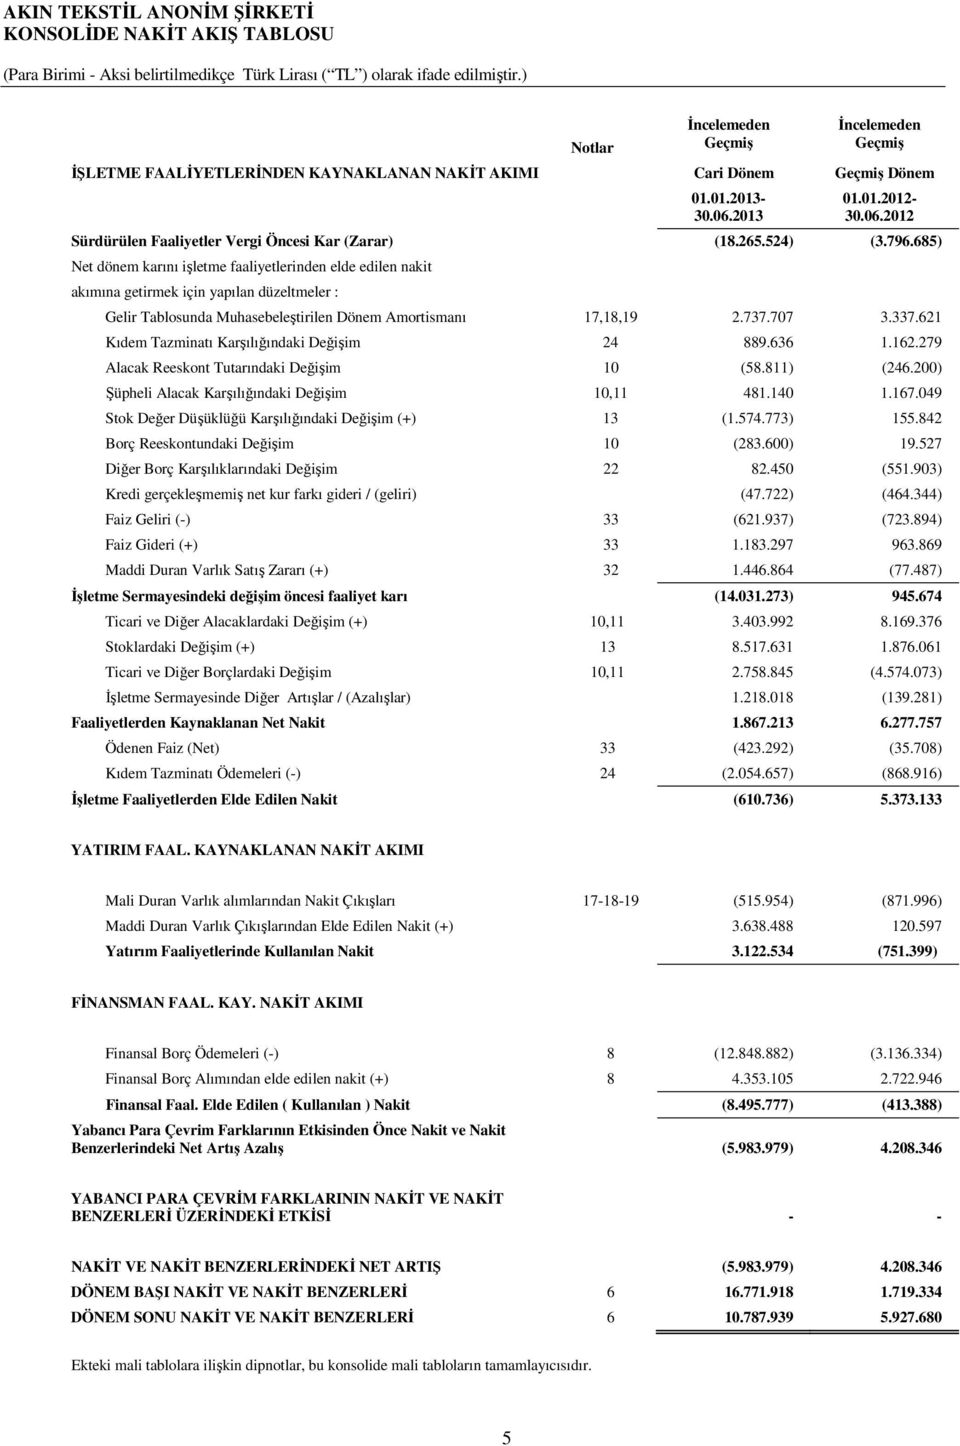 2012 Sürdürülen Faaliyetler Vergi Öncesi Kar (Zarar) (18.265.524) (3.796.